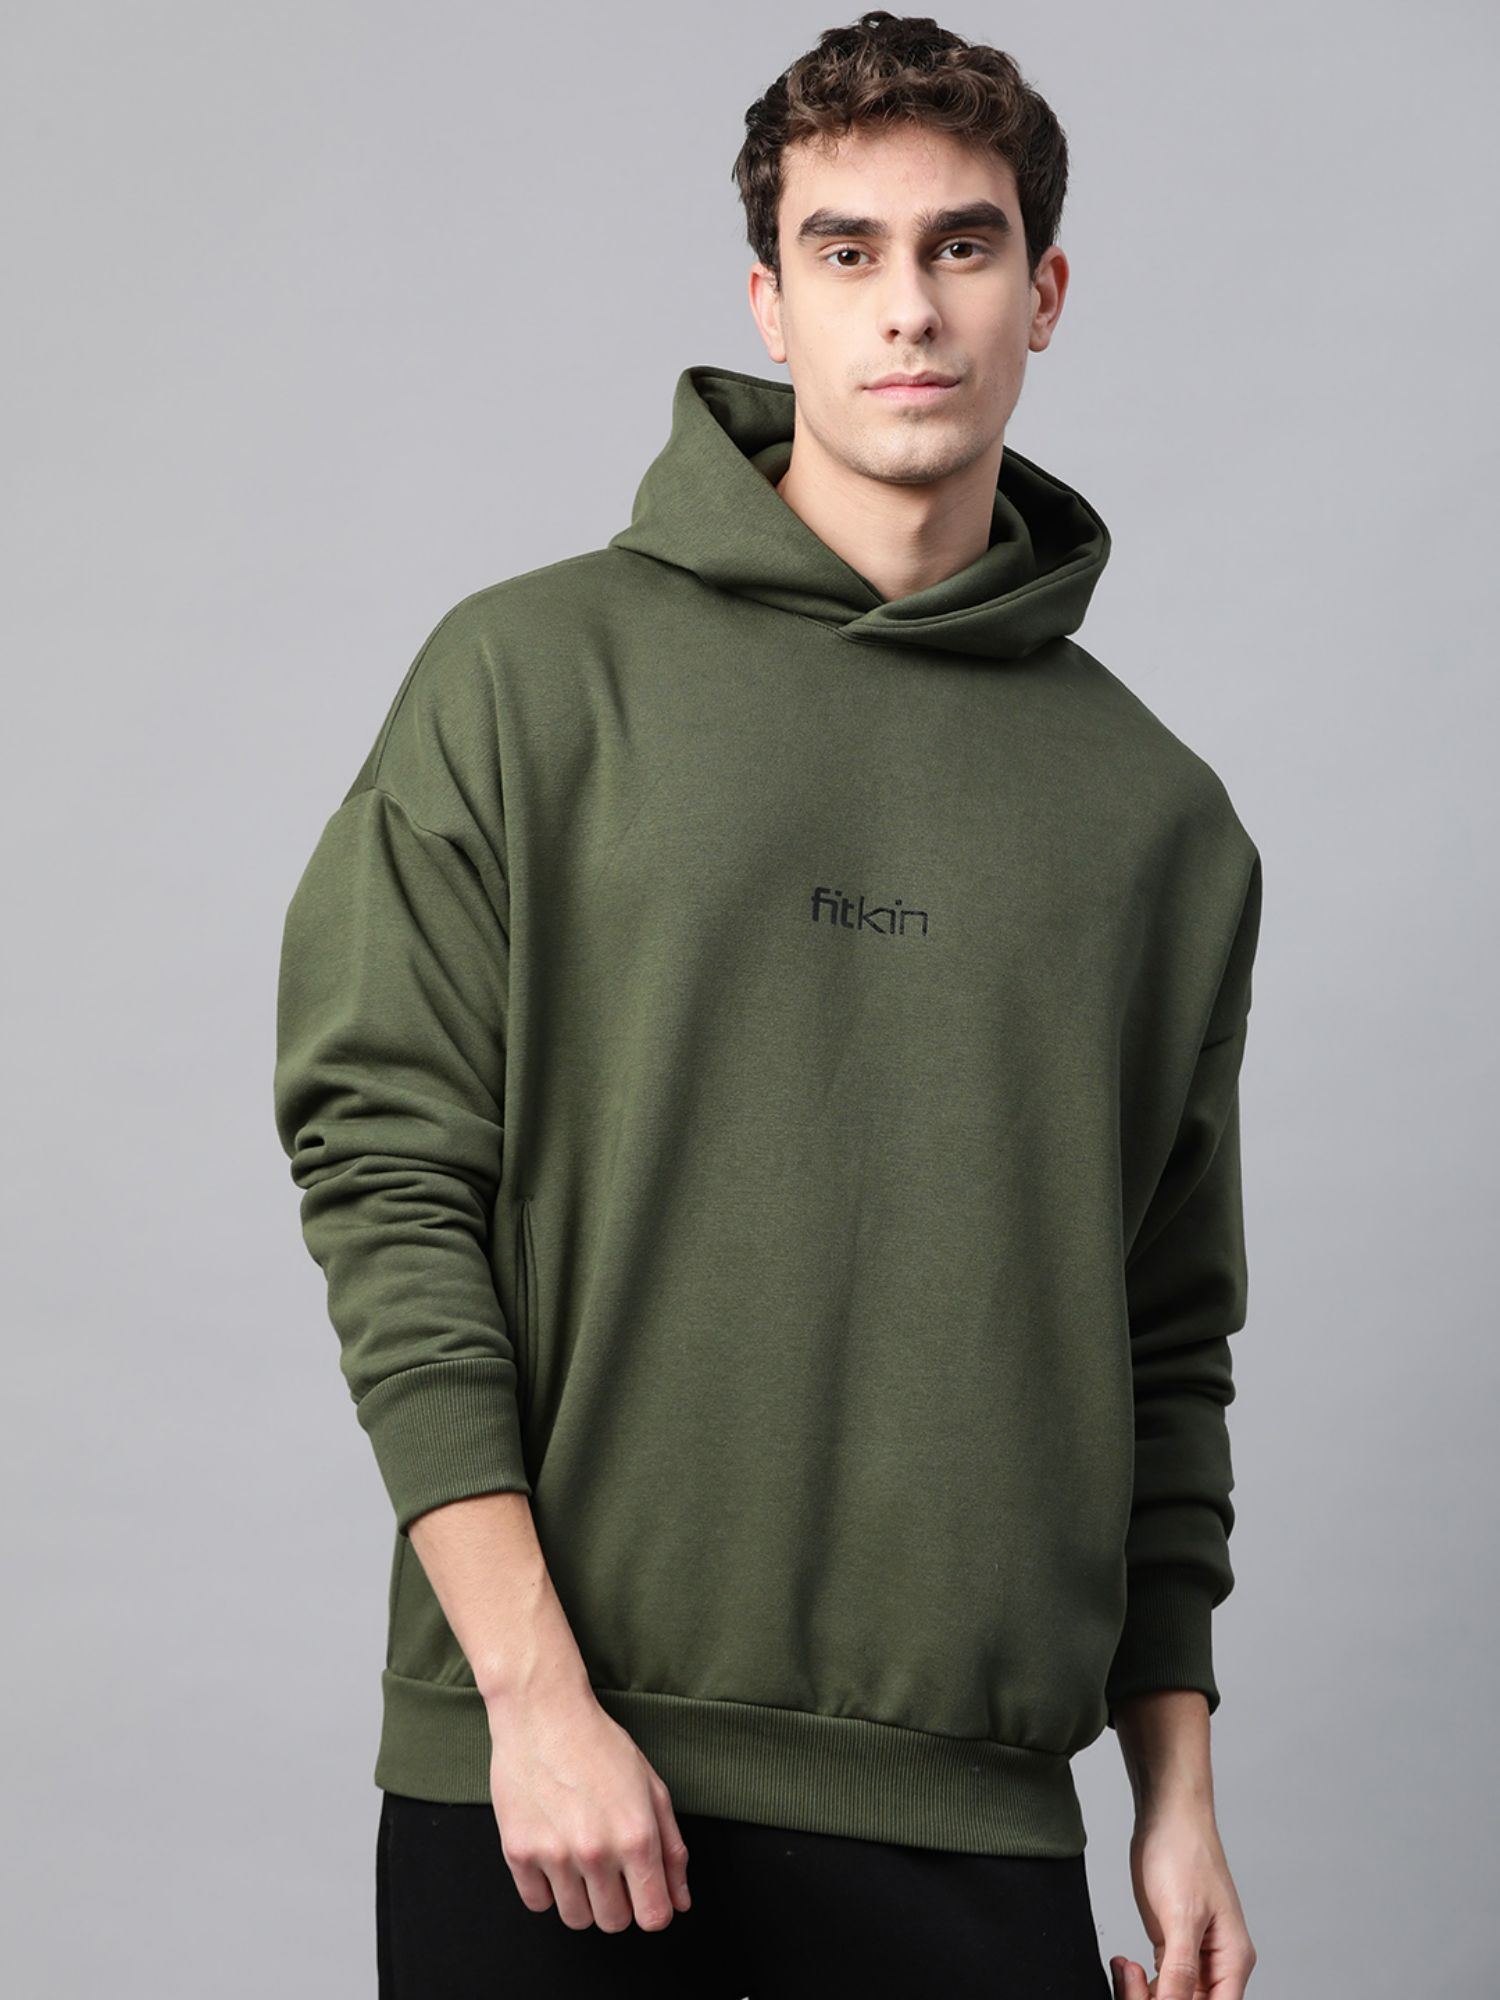 Buy Fitkin Mens Olive Fleece Winter Hoodie Sweatshirt Online